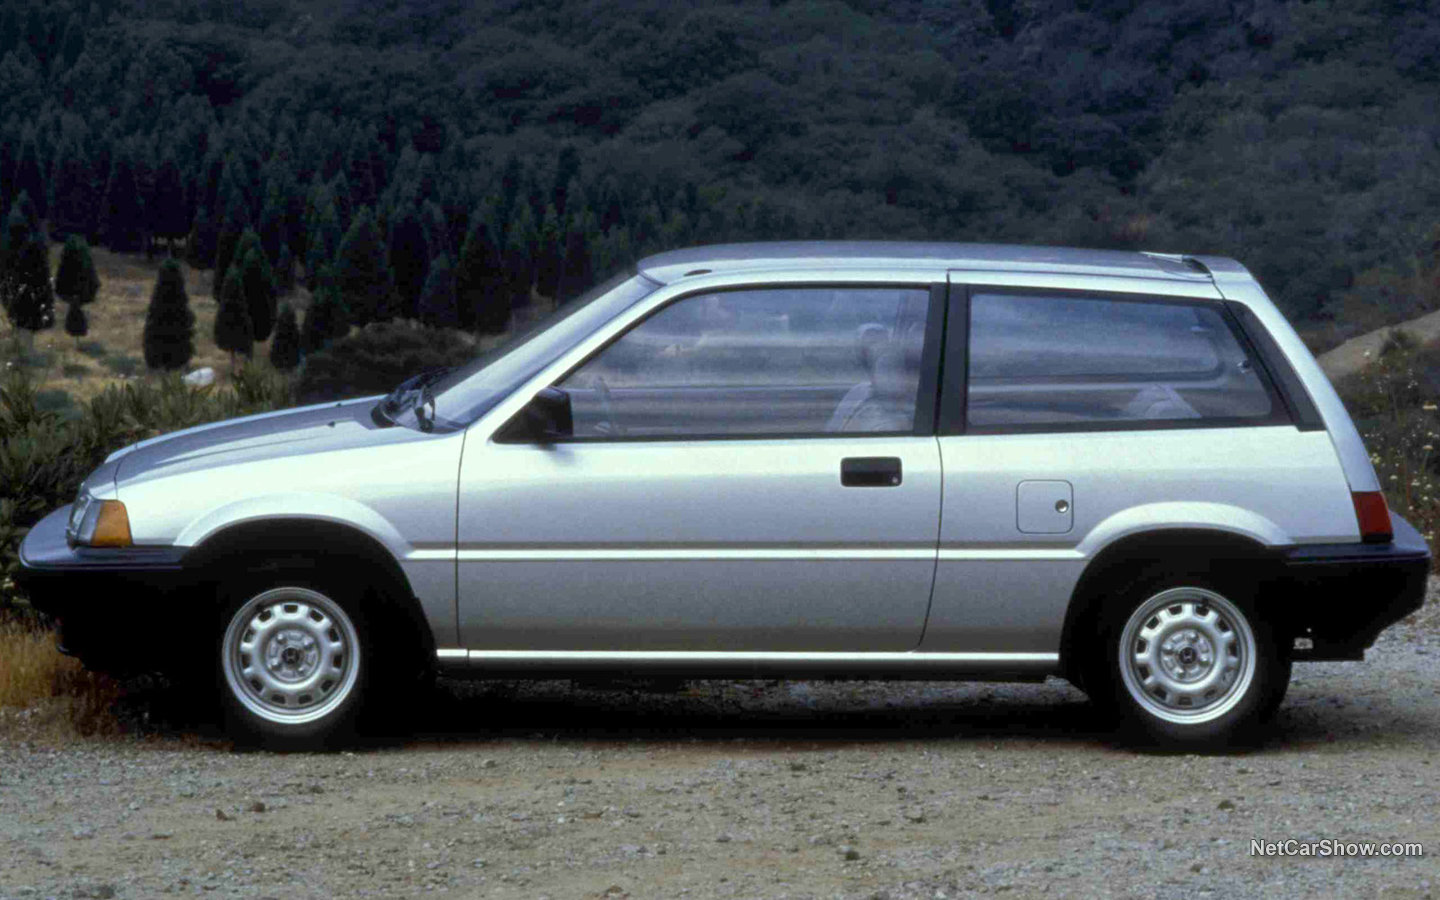 Honda Civic Hatchback 1985 9cbb0383